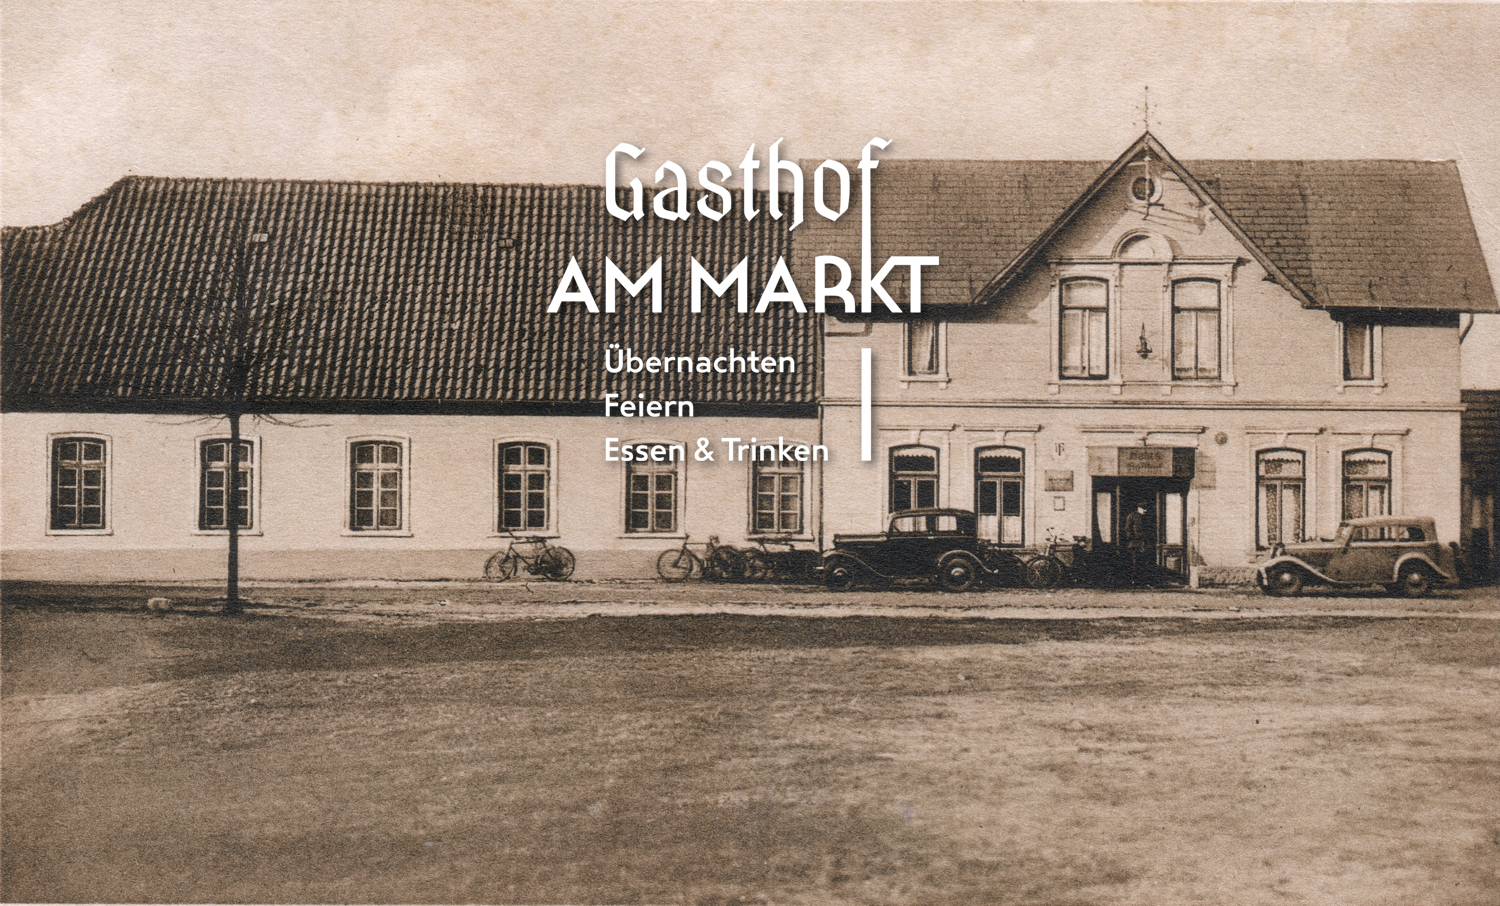 Gasthof am Markt